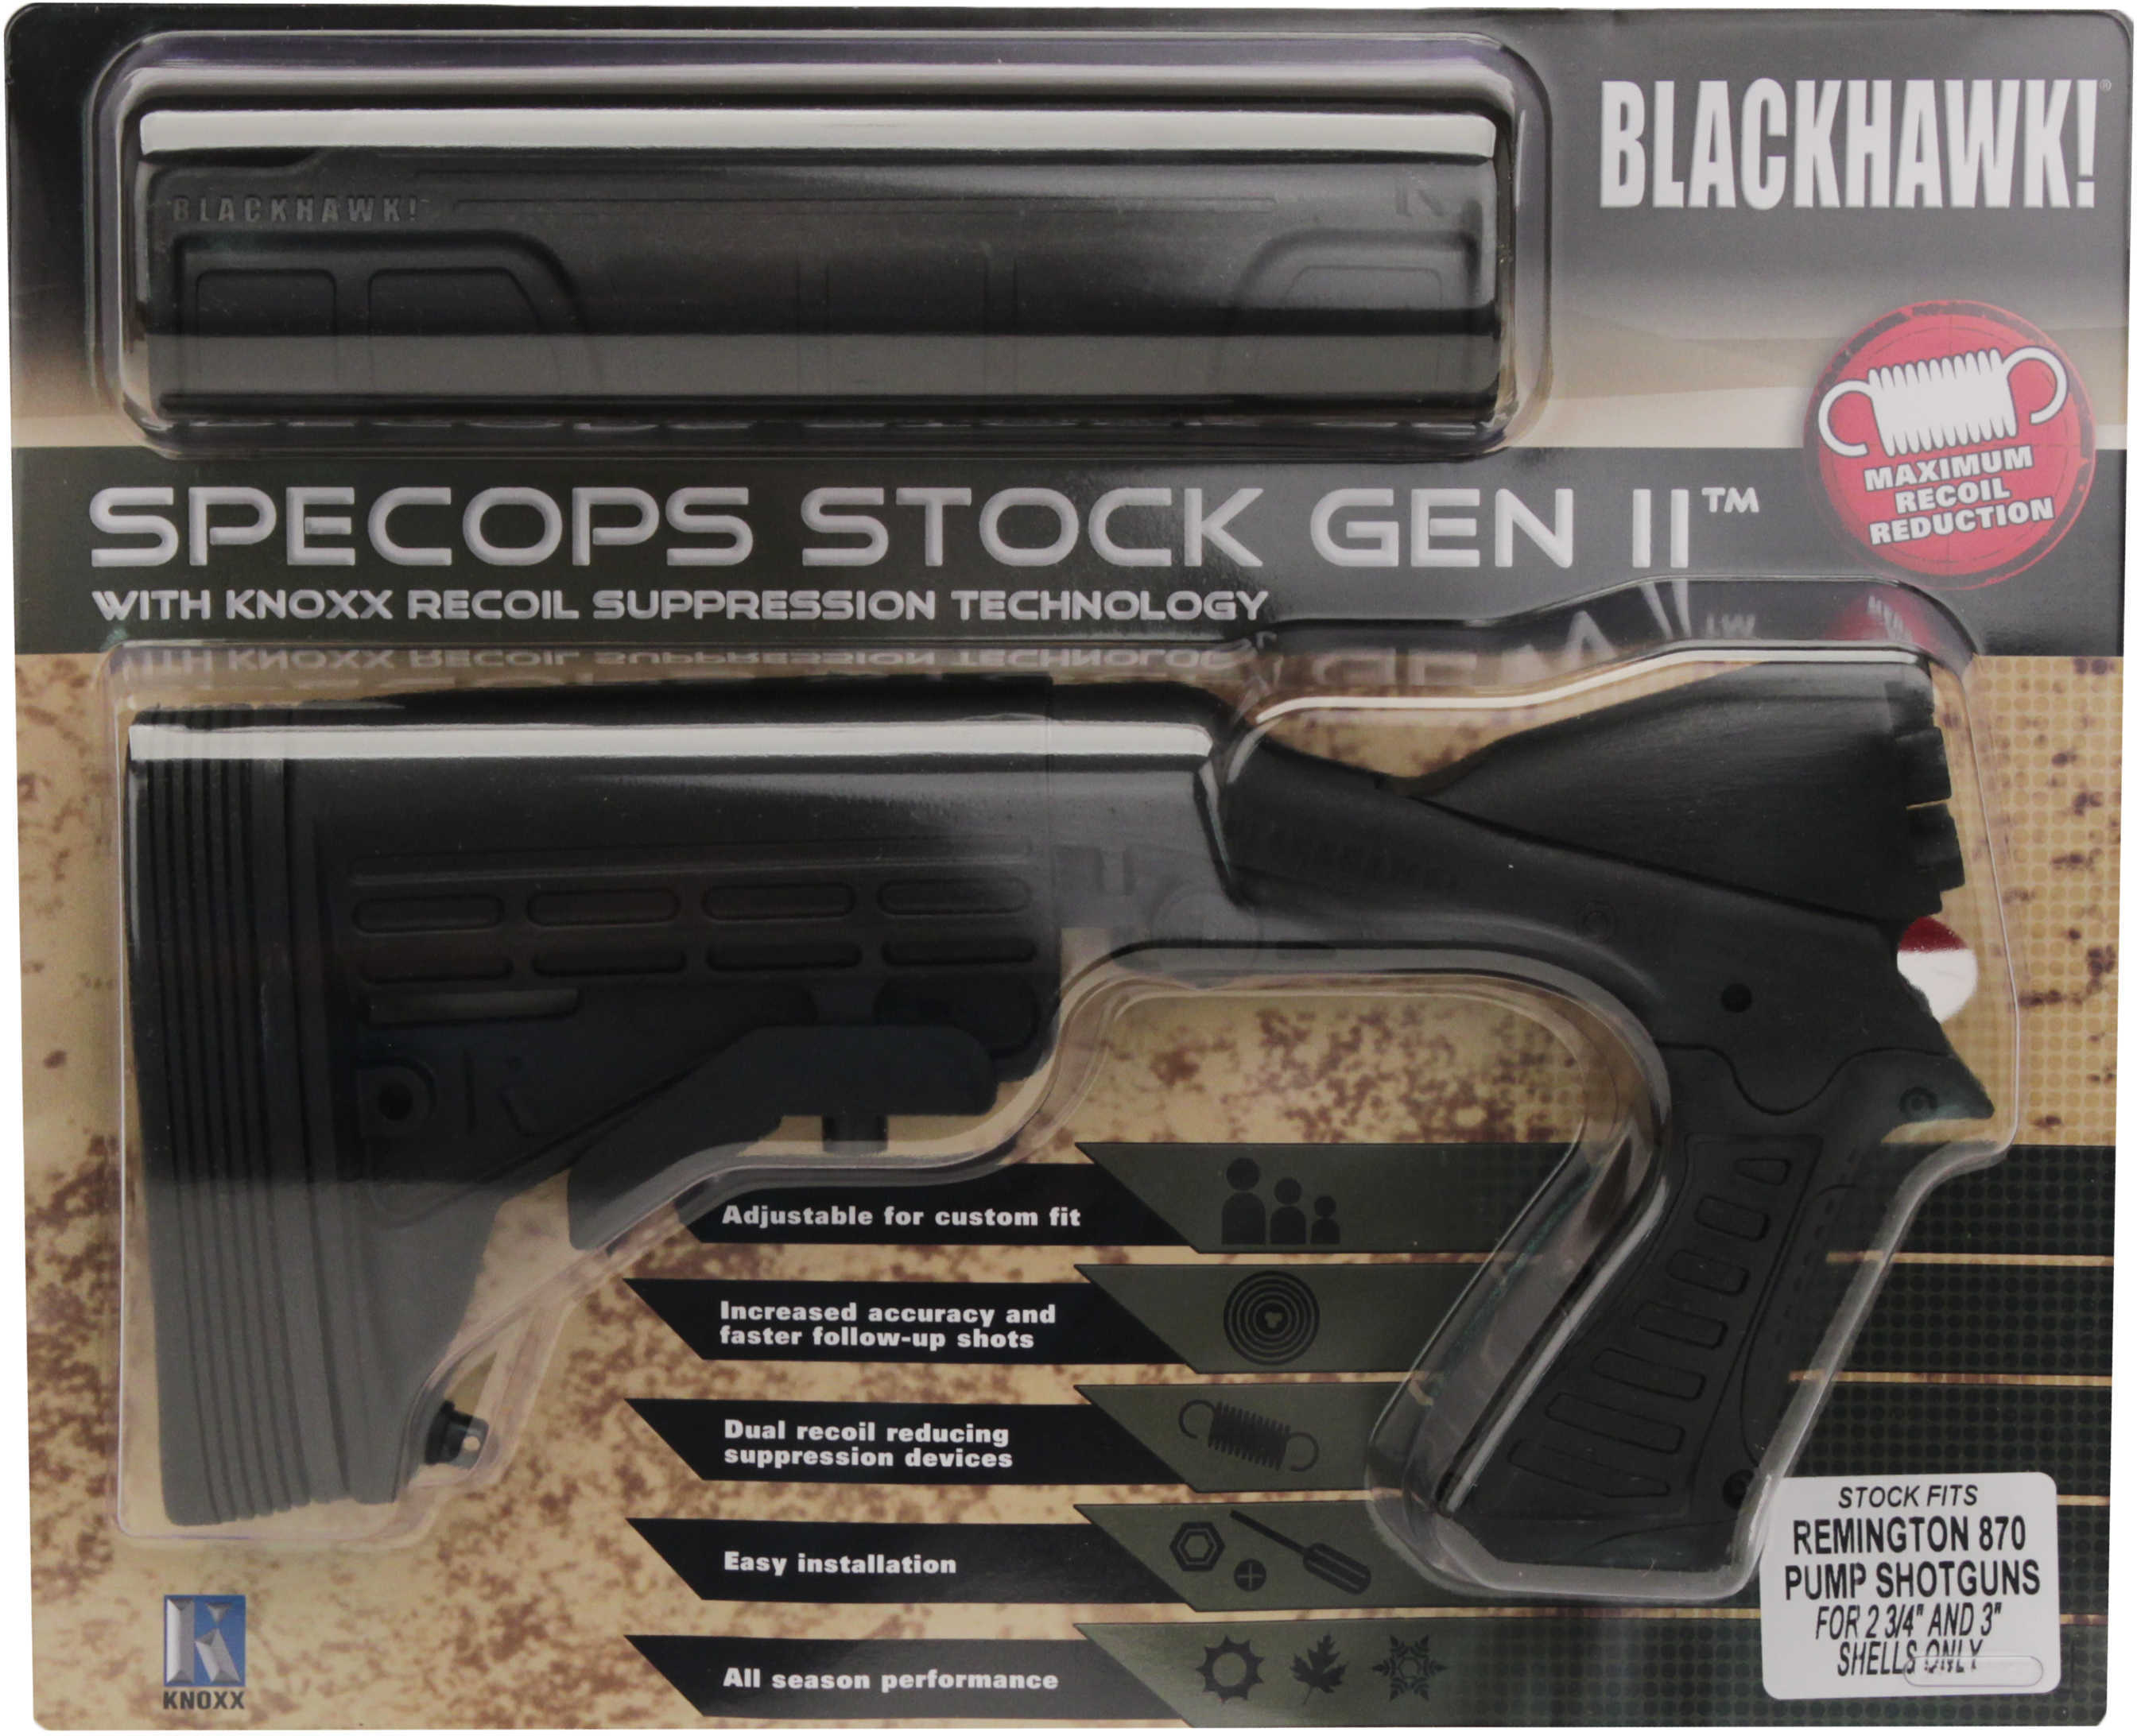 BLACKHAWK! SpecOps Stock Gen II Adjustable Fits Remington 870 12 Gauge K07100-C